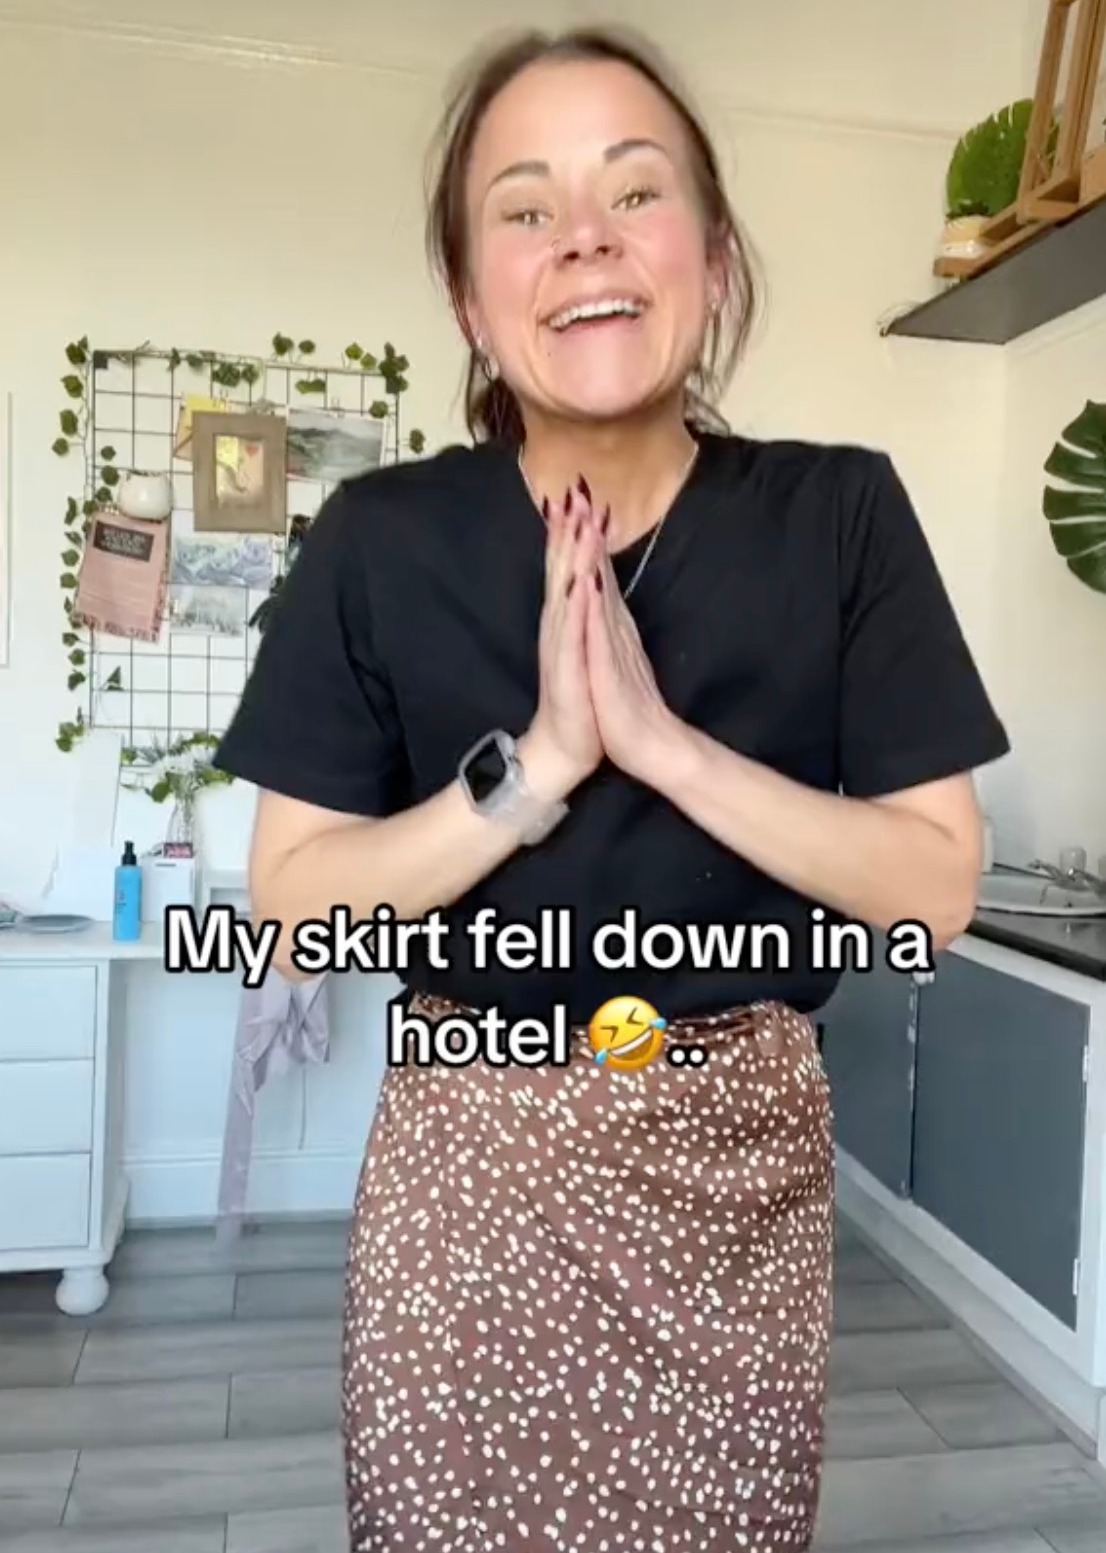 Sie enthüllte, dass ihr Rock in einem Hotel heruntergefallen sei und dass ihre Wahl der Unterwäsche nicht geholfen habe